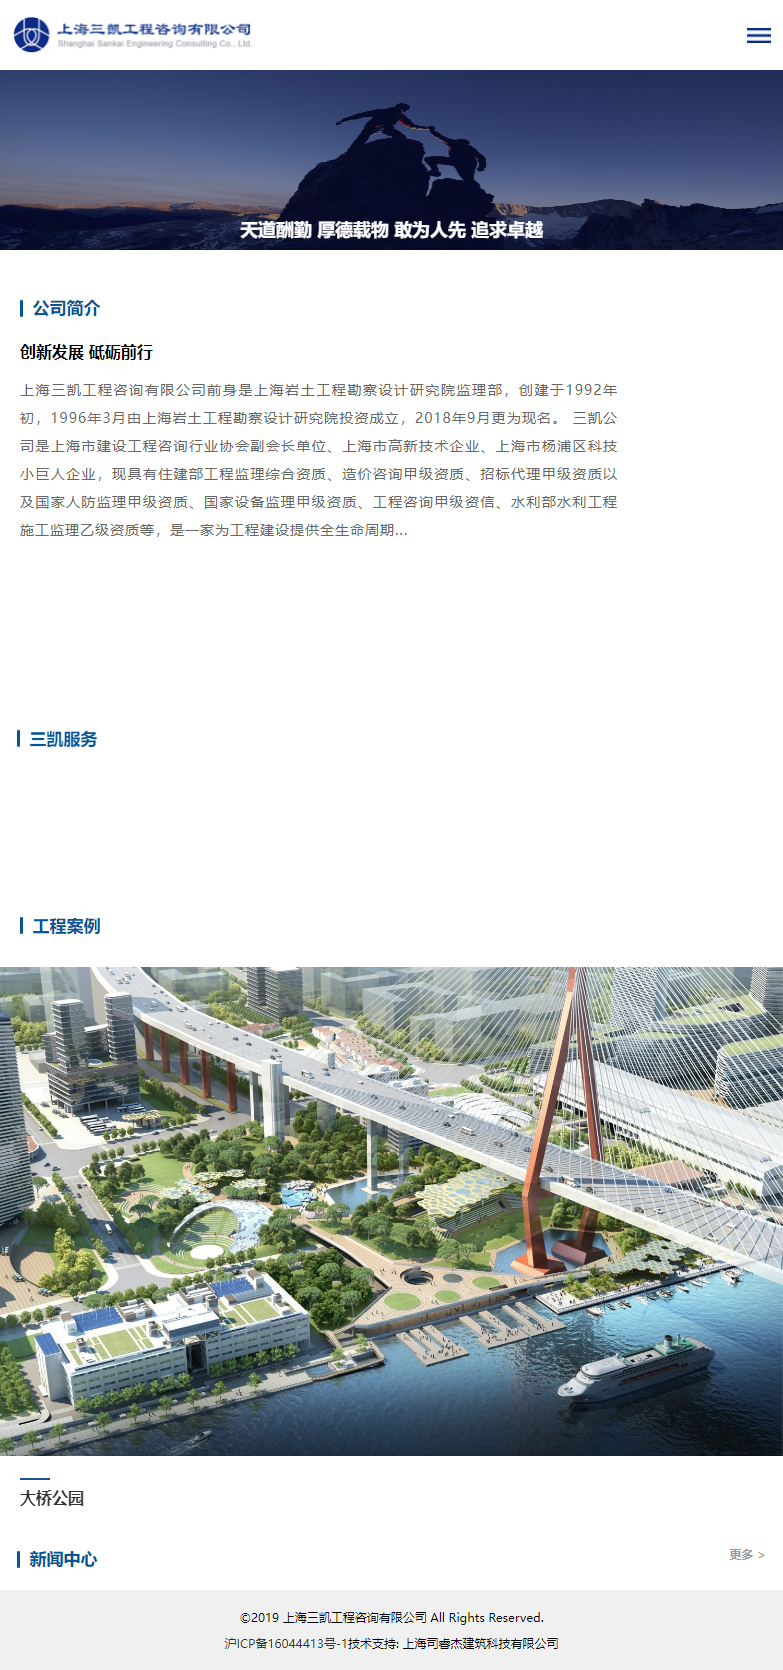 上海三凯工程咨询有限公司网站案例